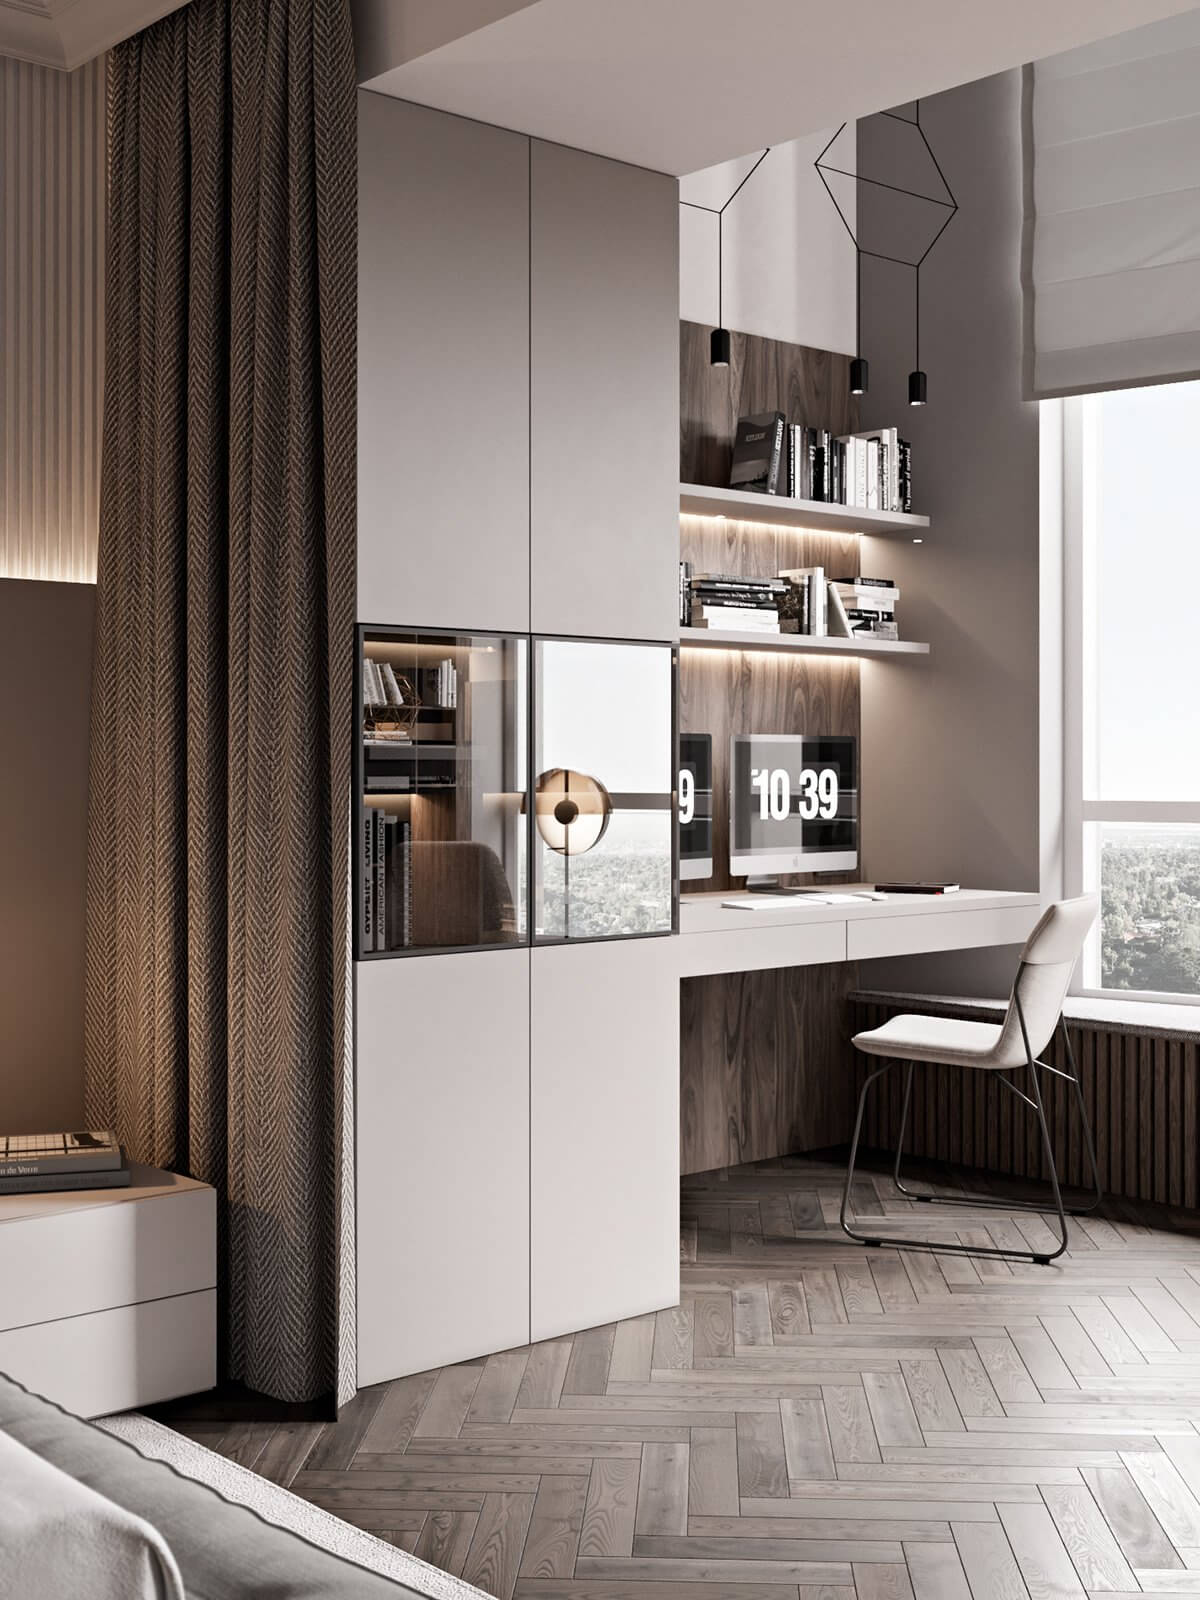 Mocco kitchen living master bedroom desk - cgi visualization